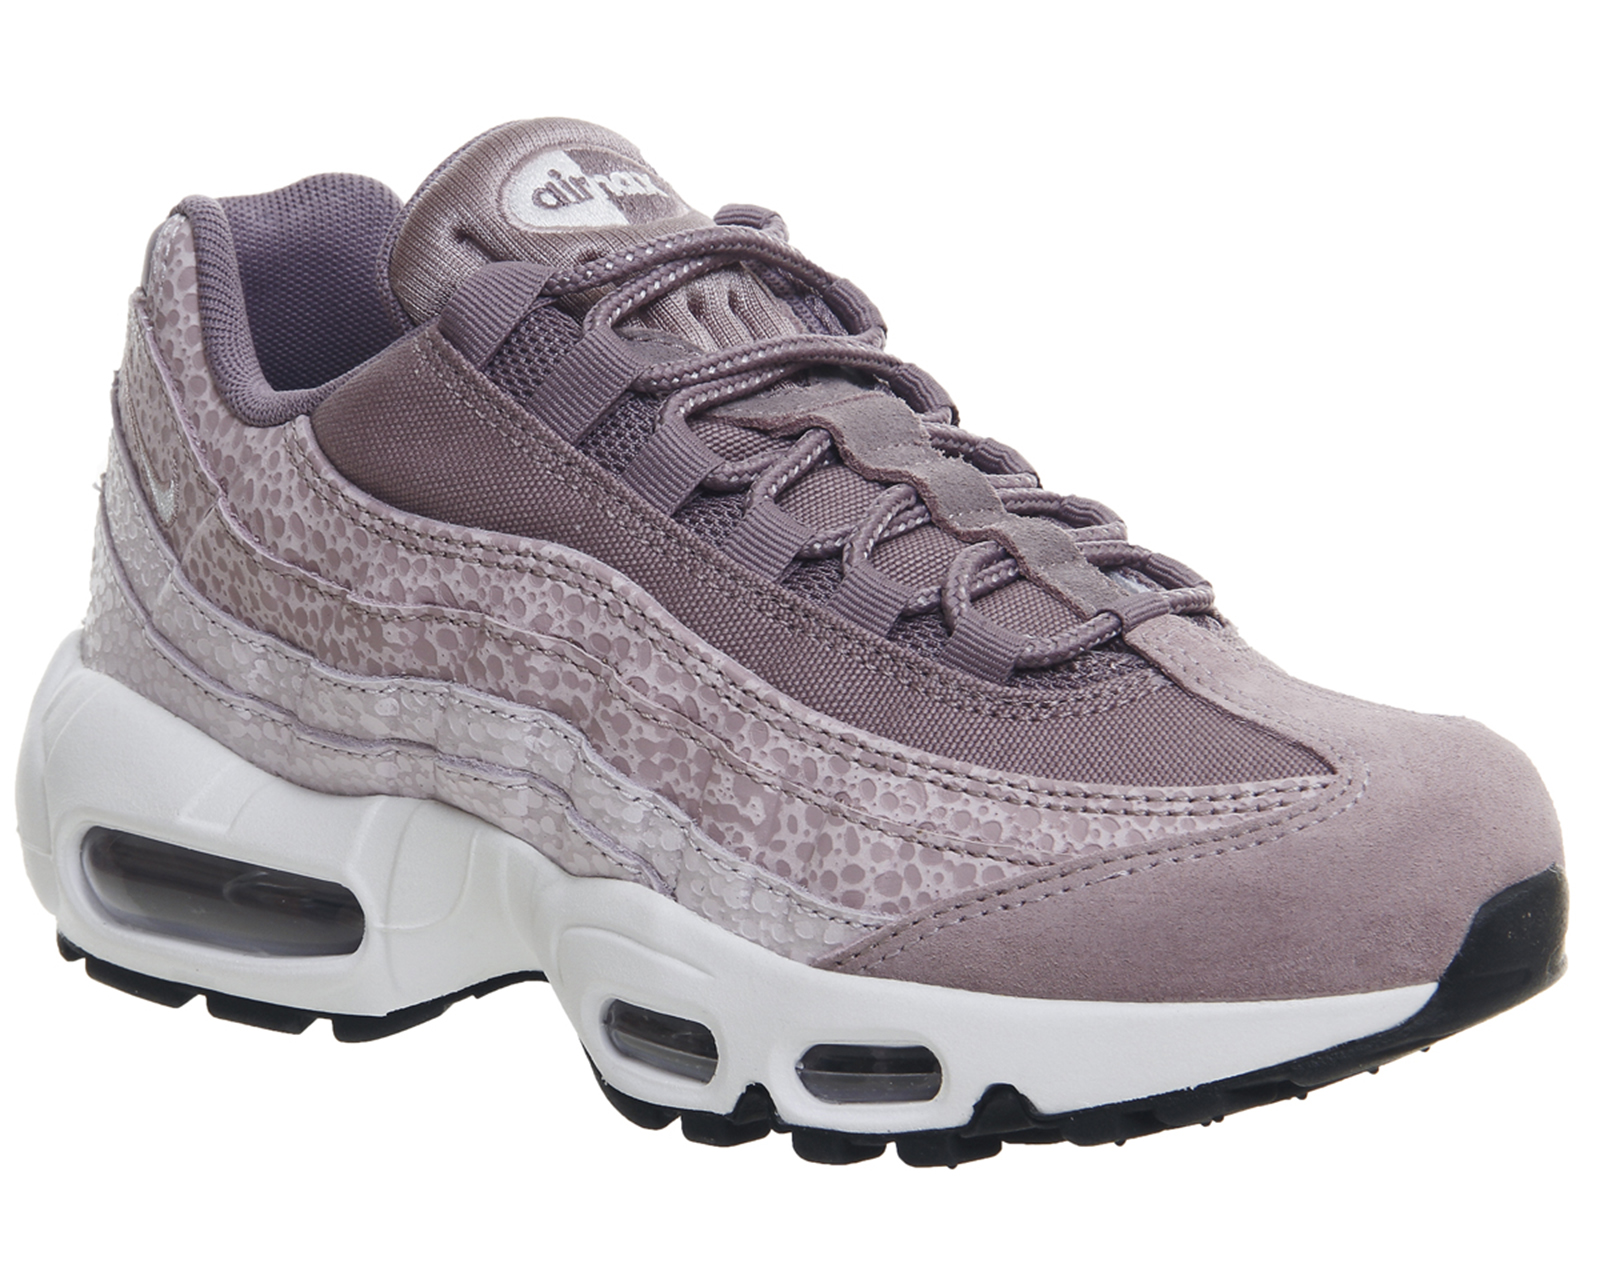 purple 95s Shop Clothing \u0026 Shoes Online